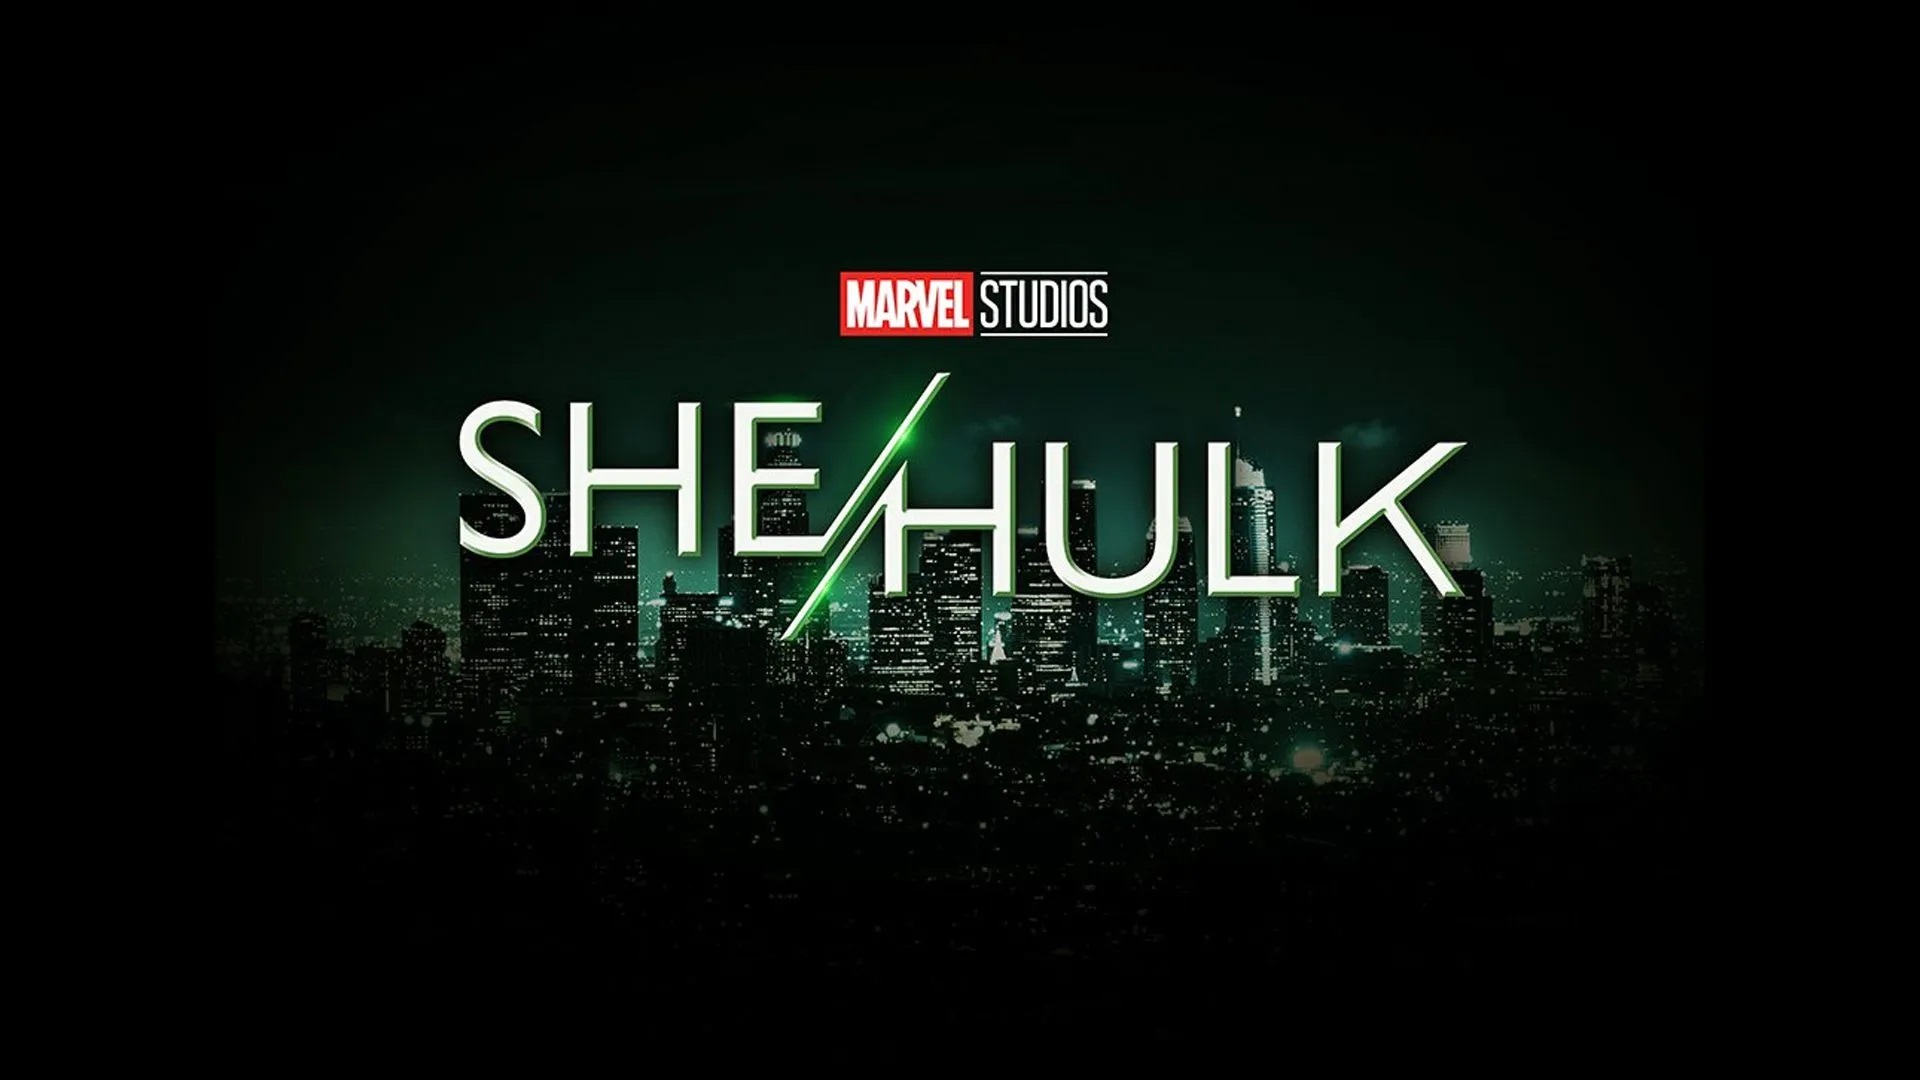 She Hulk data